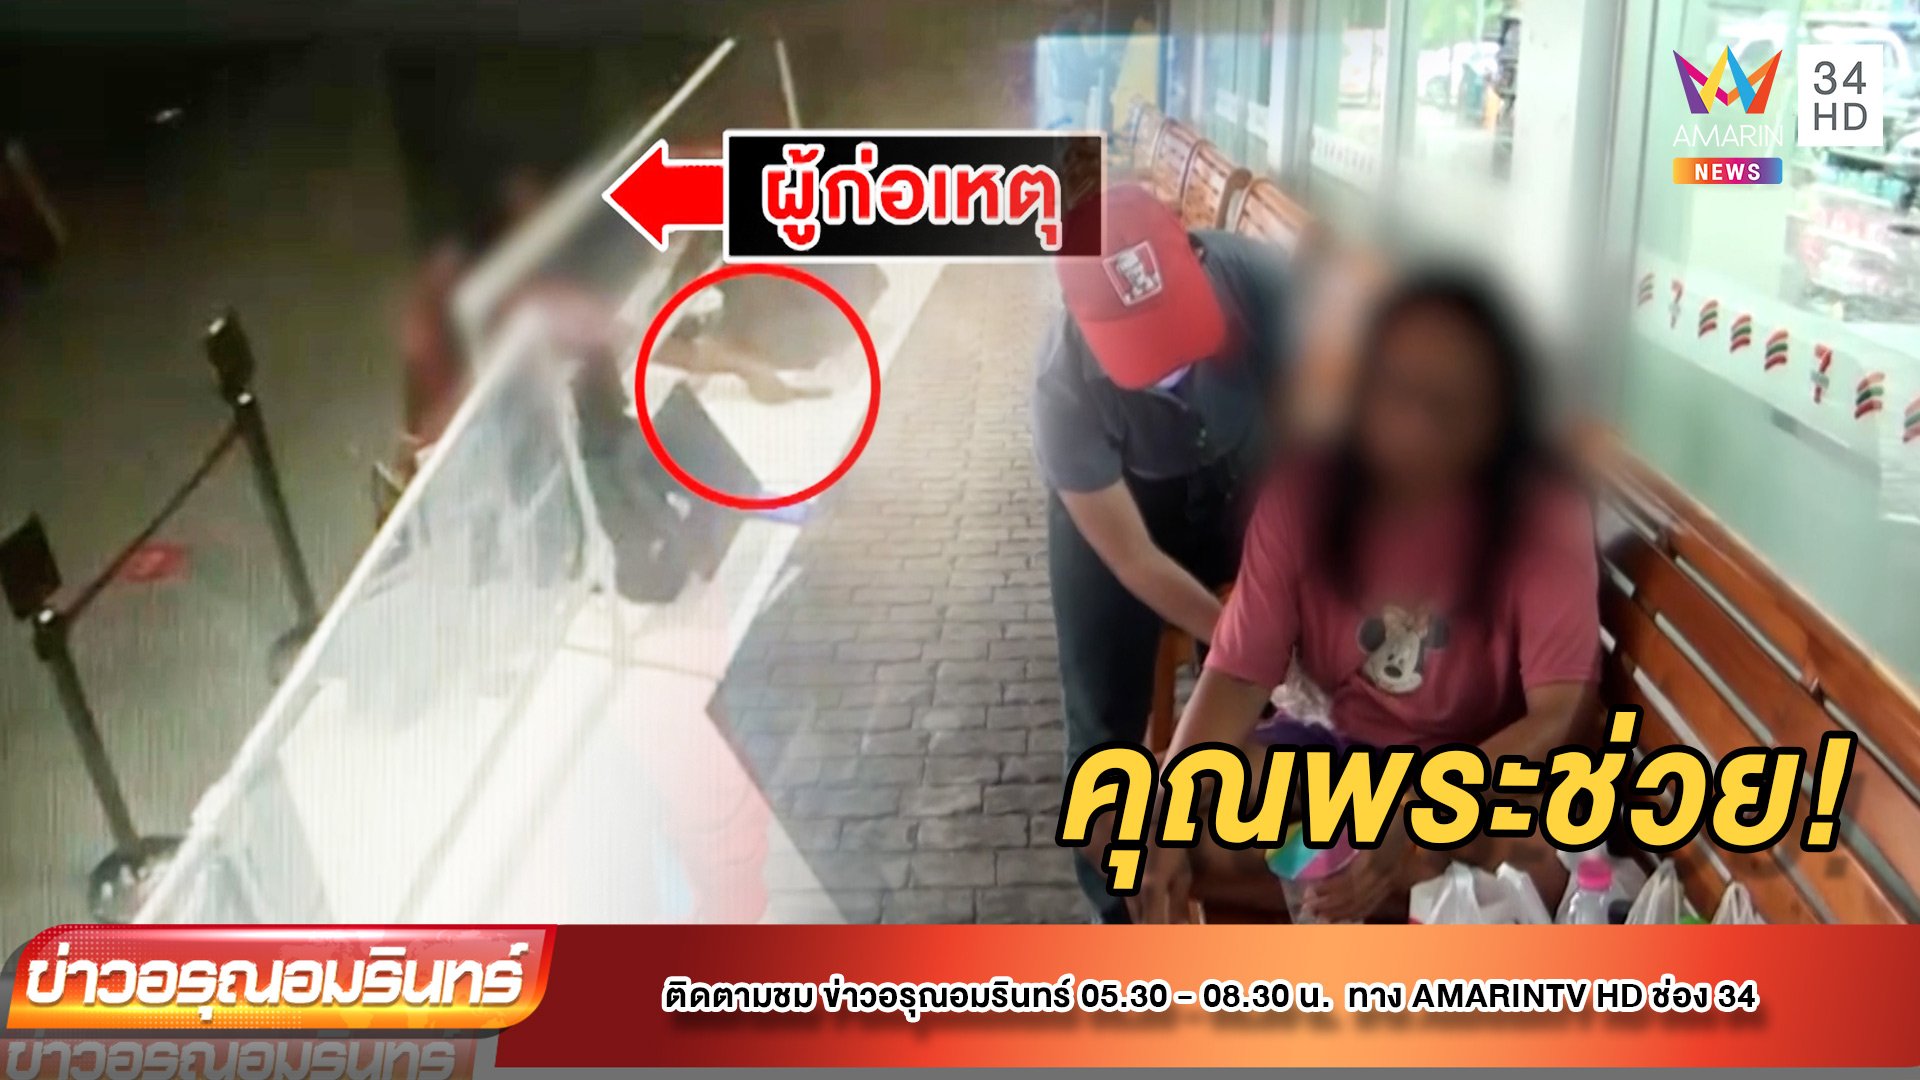 สาวป่วยจิตขโมยมือถือร้านไก่ทอด โป๊ะสุดถูกจับเพราะใส่เสื้อตัวเดิม | ข่าวอรุณอมรินทร์ | 1 ก.ย. 64 | AMARIN TVHD34